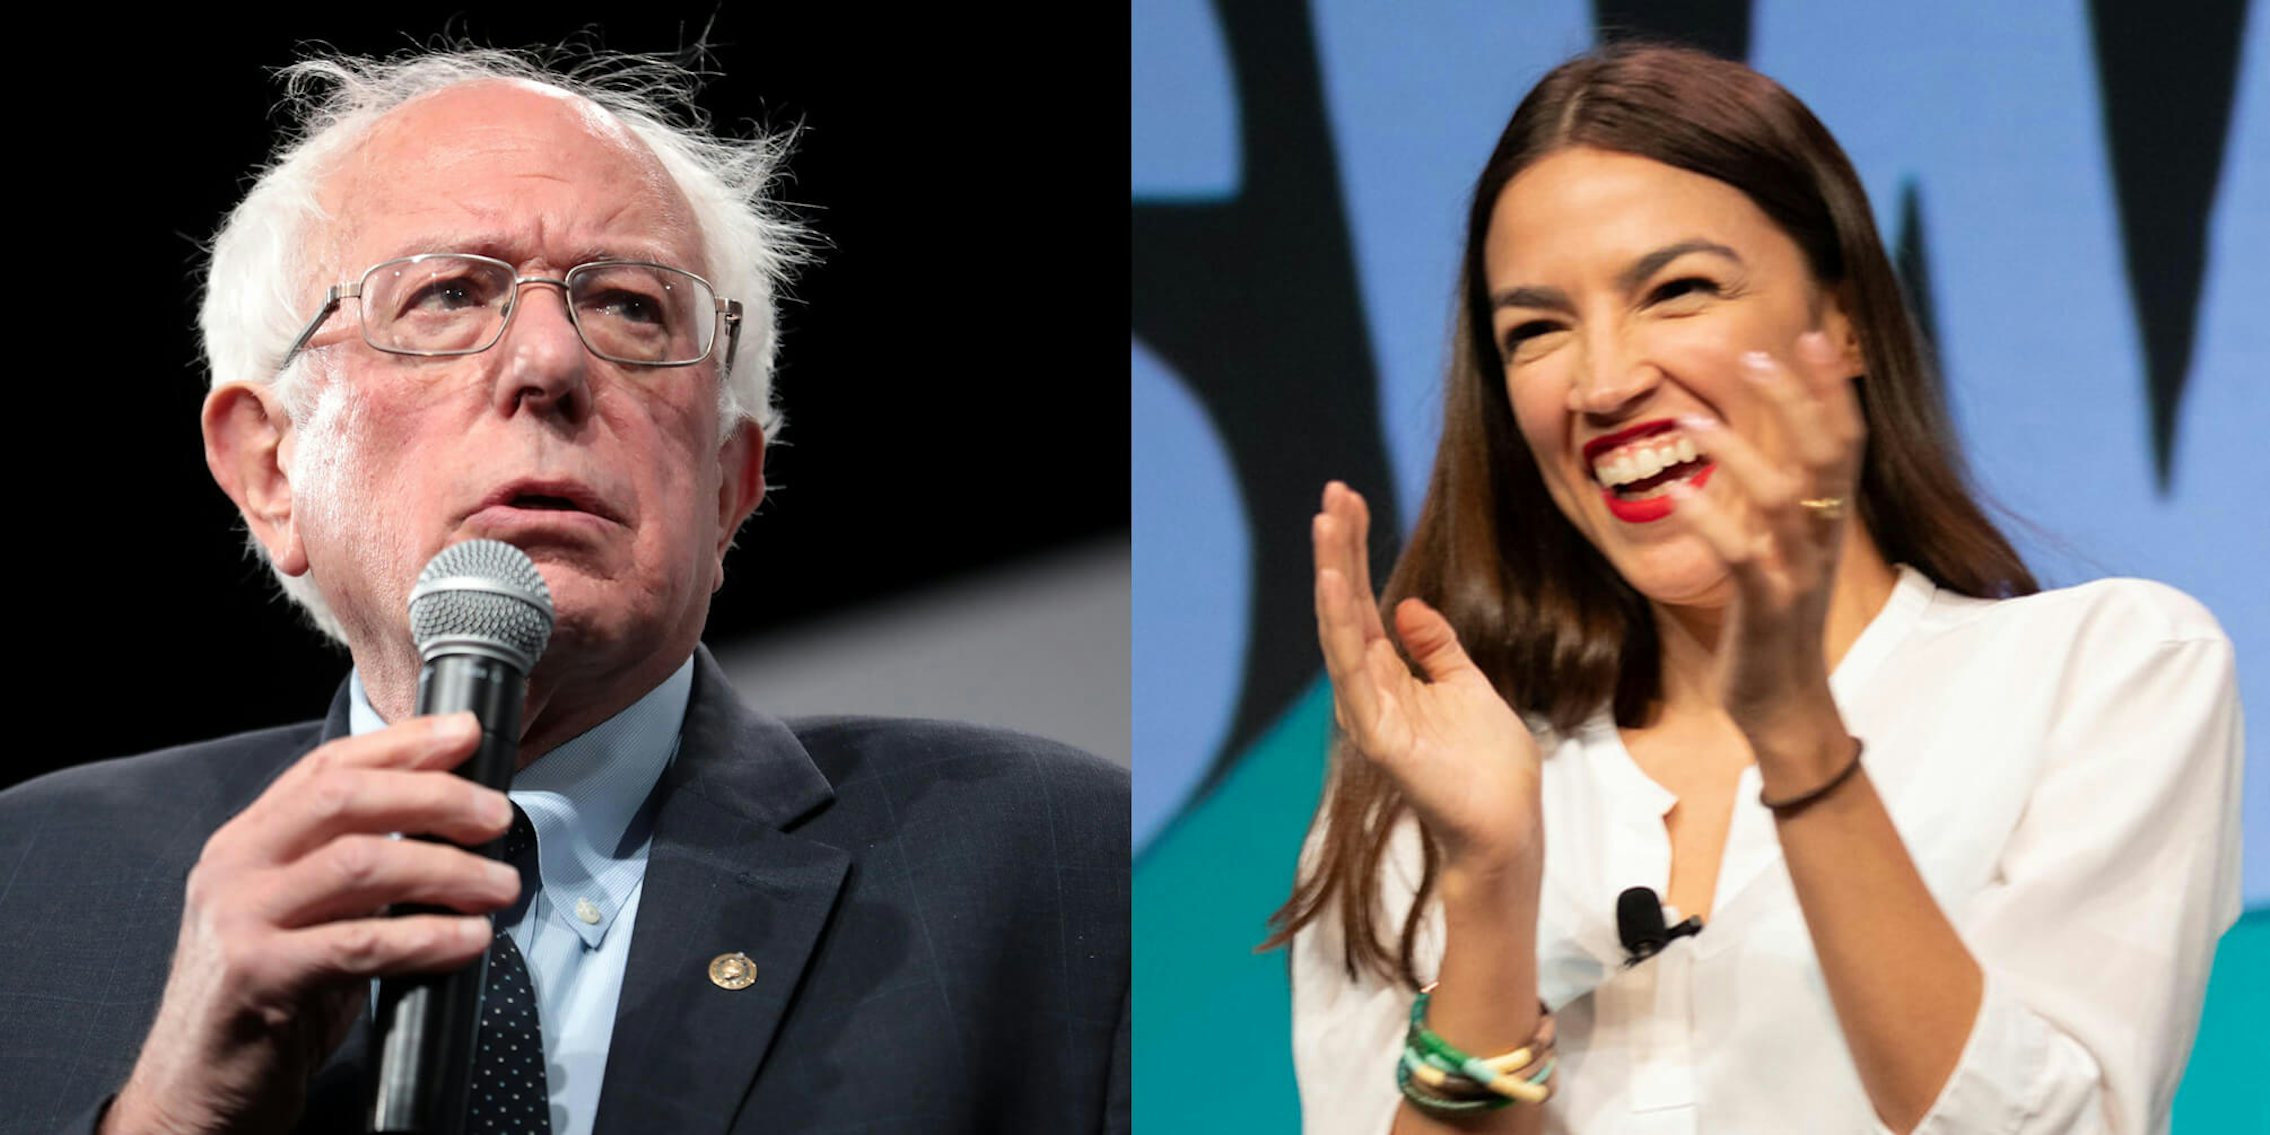 Bernie Sanders Alexandria Ocasio-Cortez Endorsement